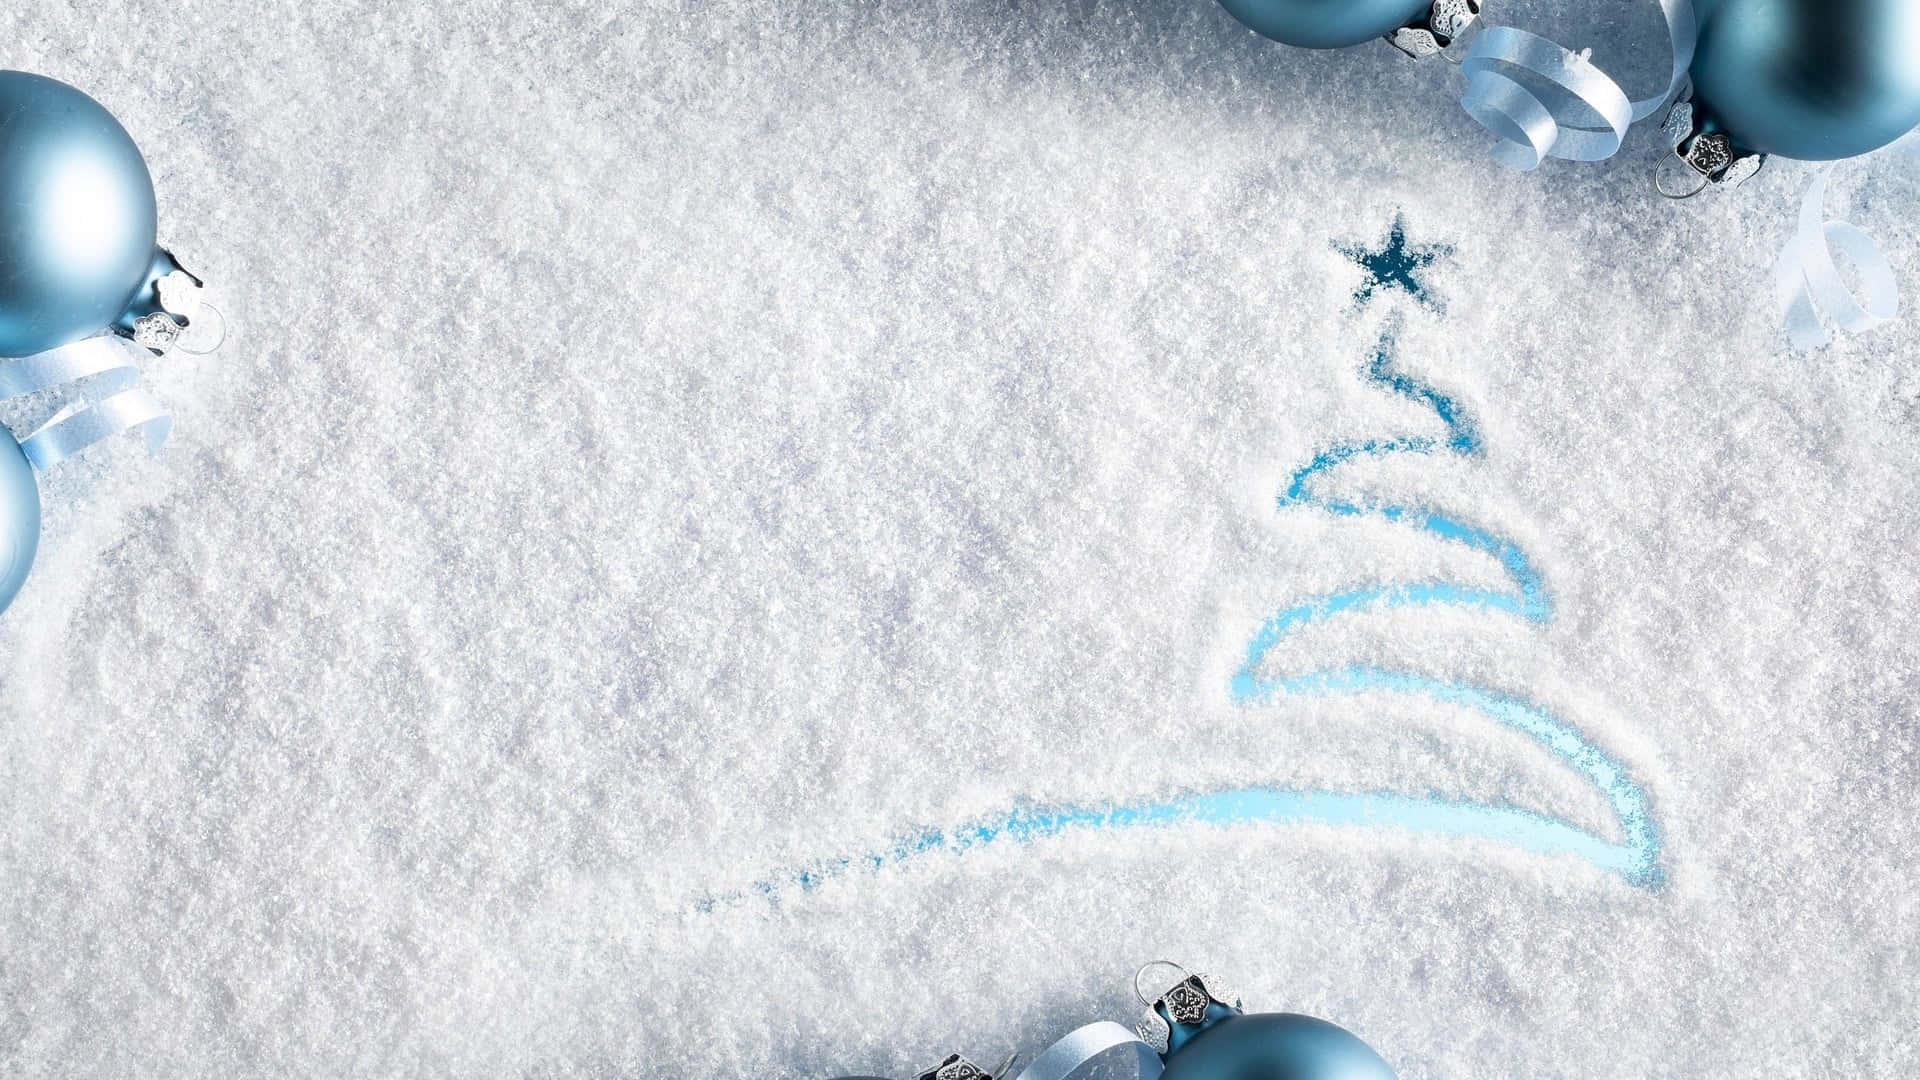 Enblå Julgran Är Ritad På Snön. Wallpaper